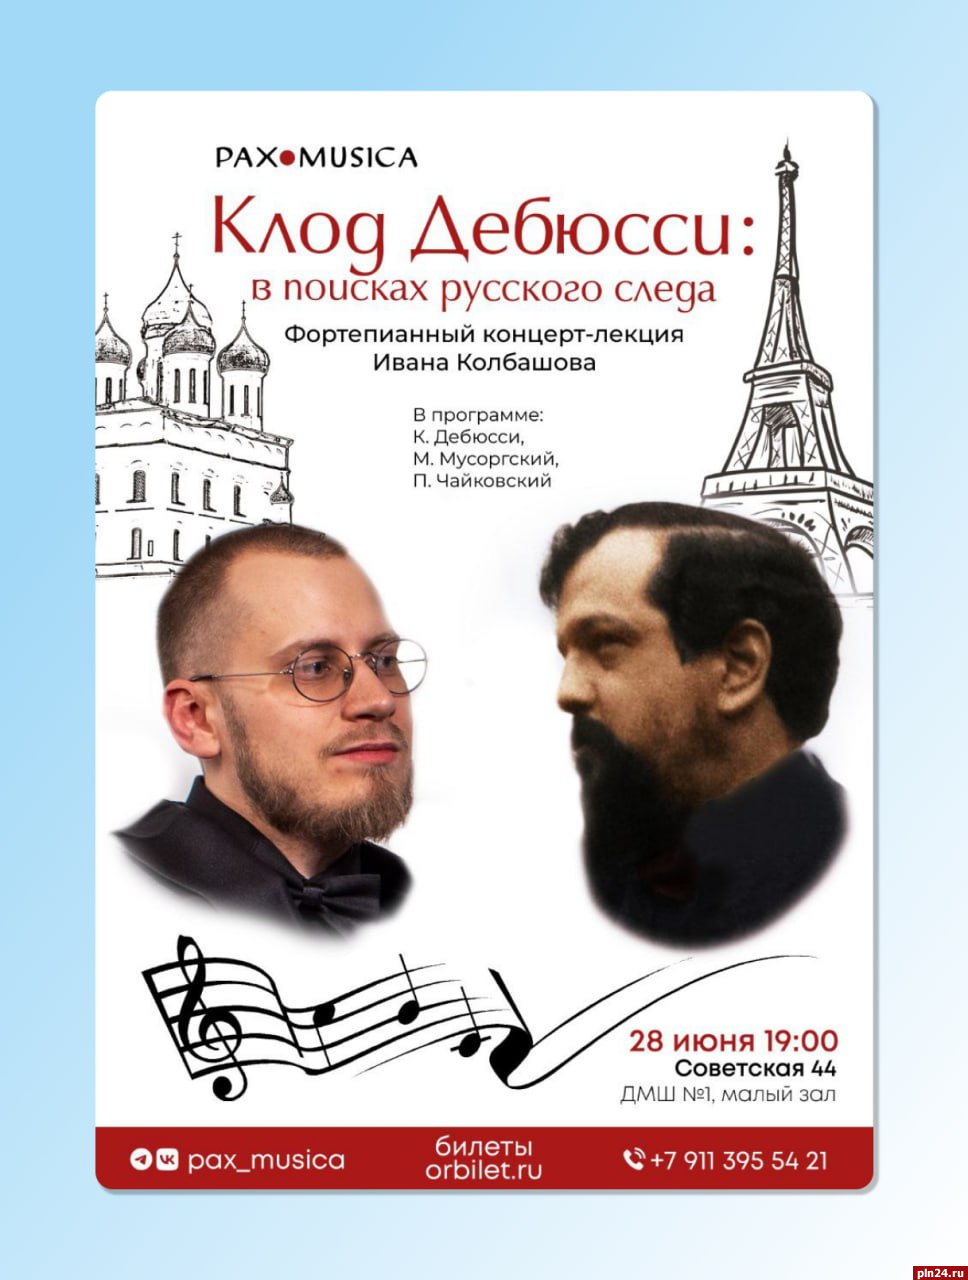 Фортепианный концерт-лекция пройдет в Пскове 29 июня